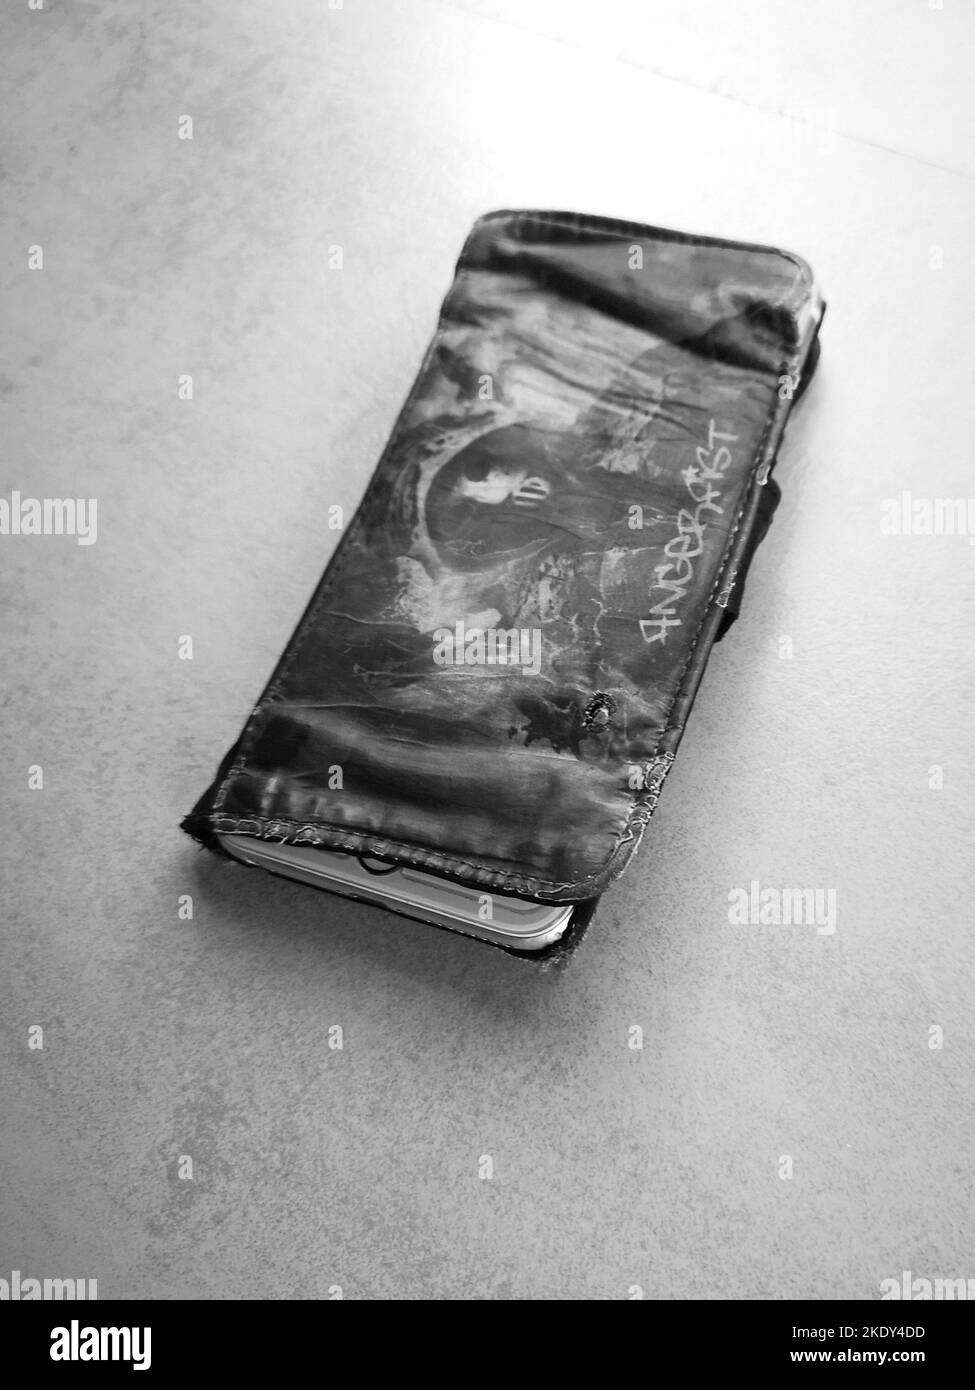 Usato Phone case, Stark gebrauchte Handyhuelle schwarzweiss bianco e nero Foto Stock